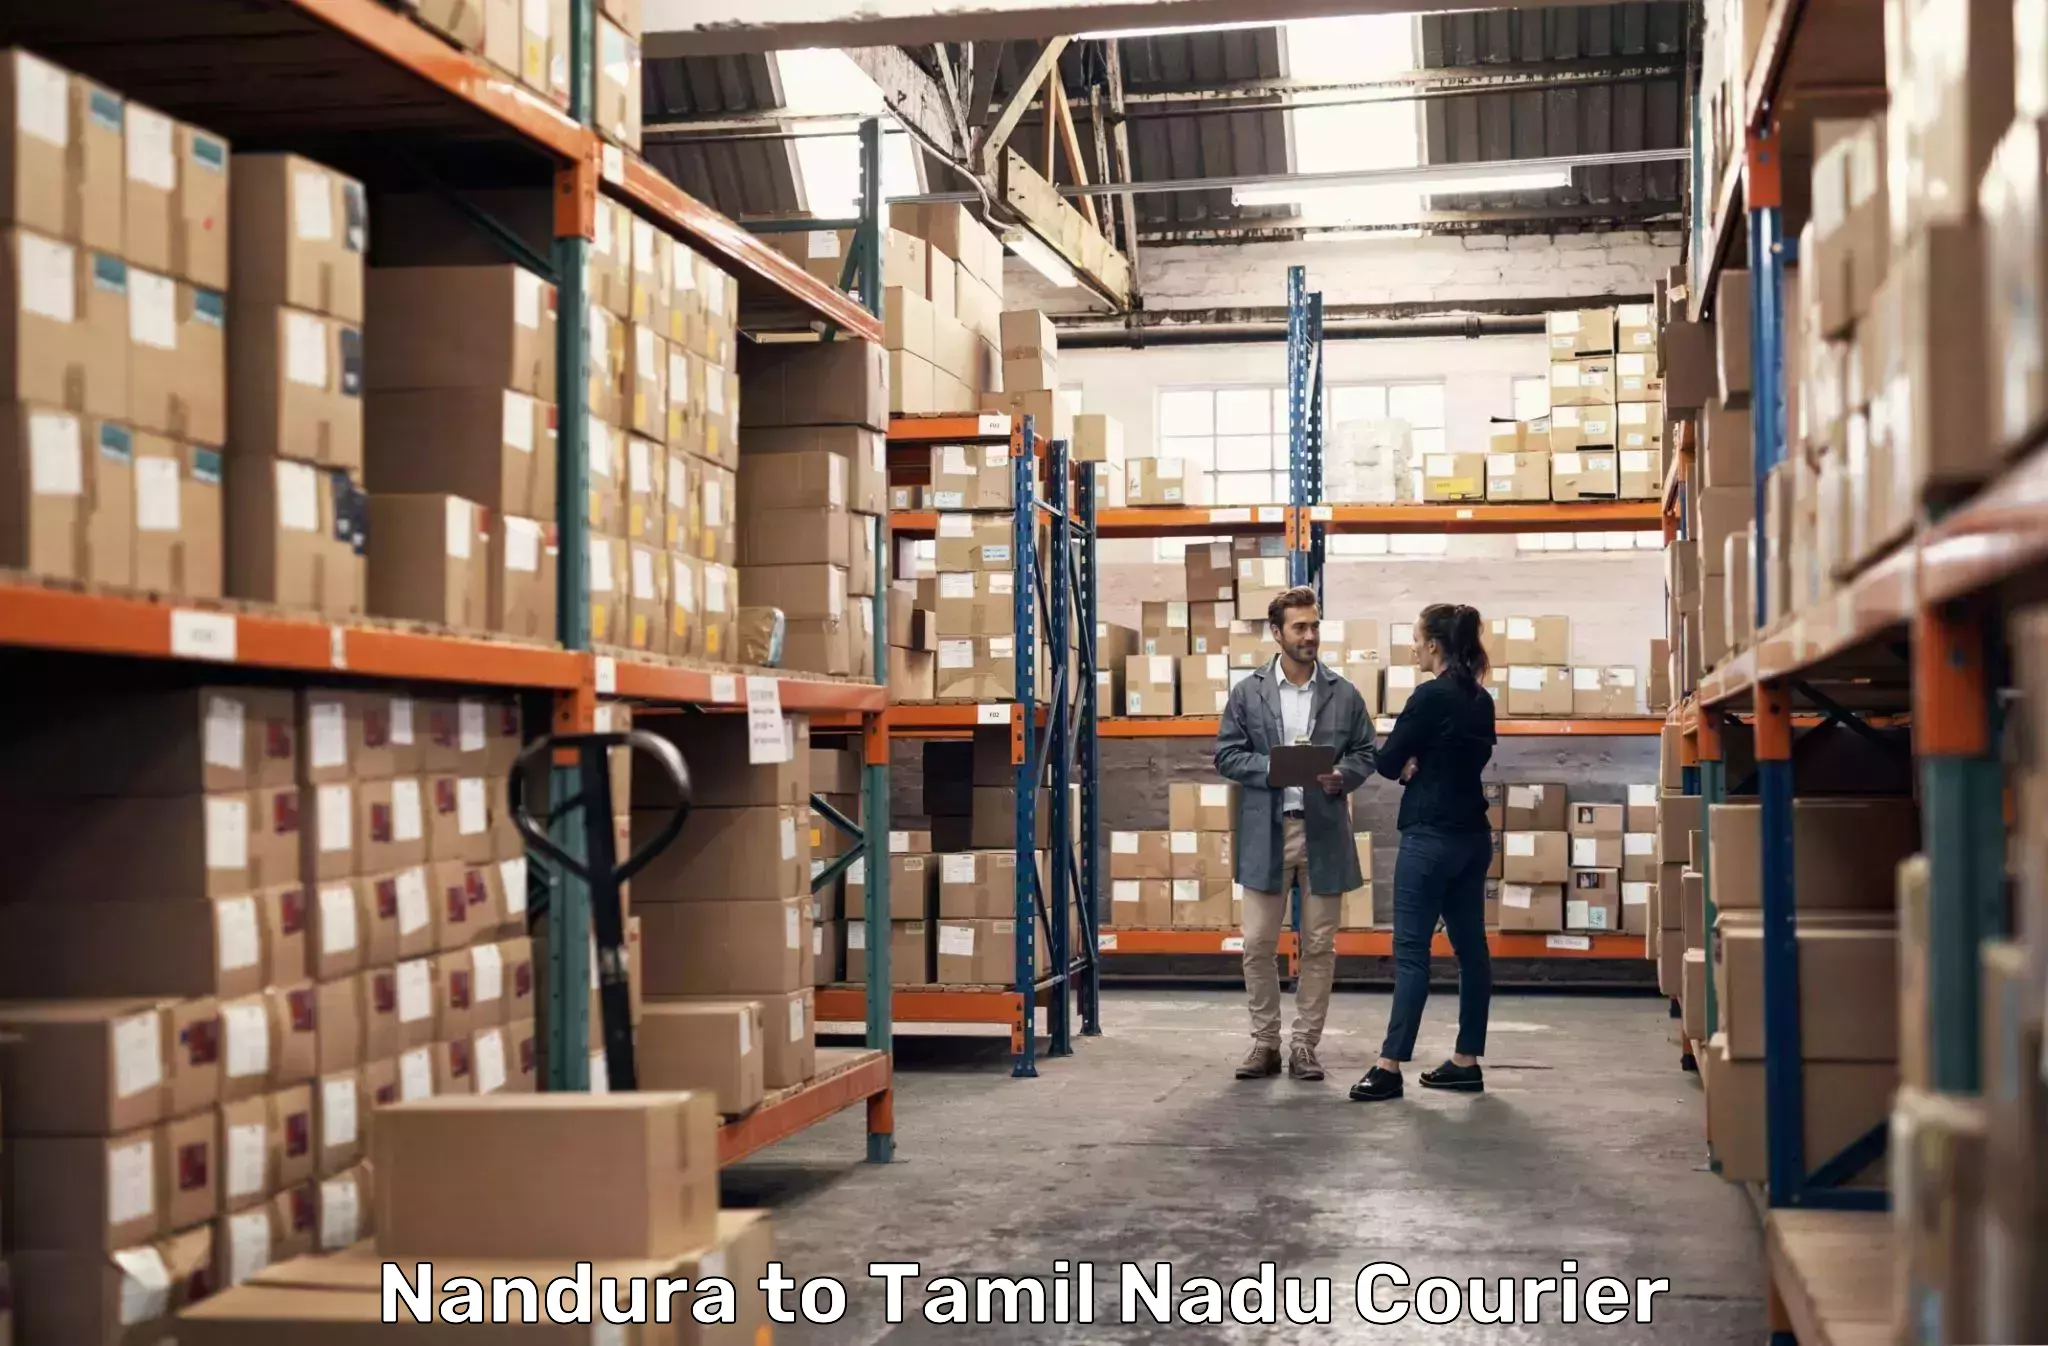 Seamless shipping service Nandura to Thondi